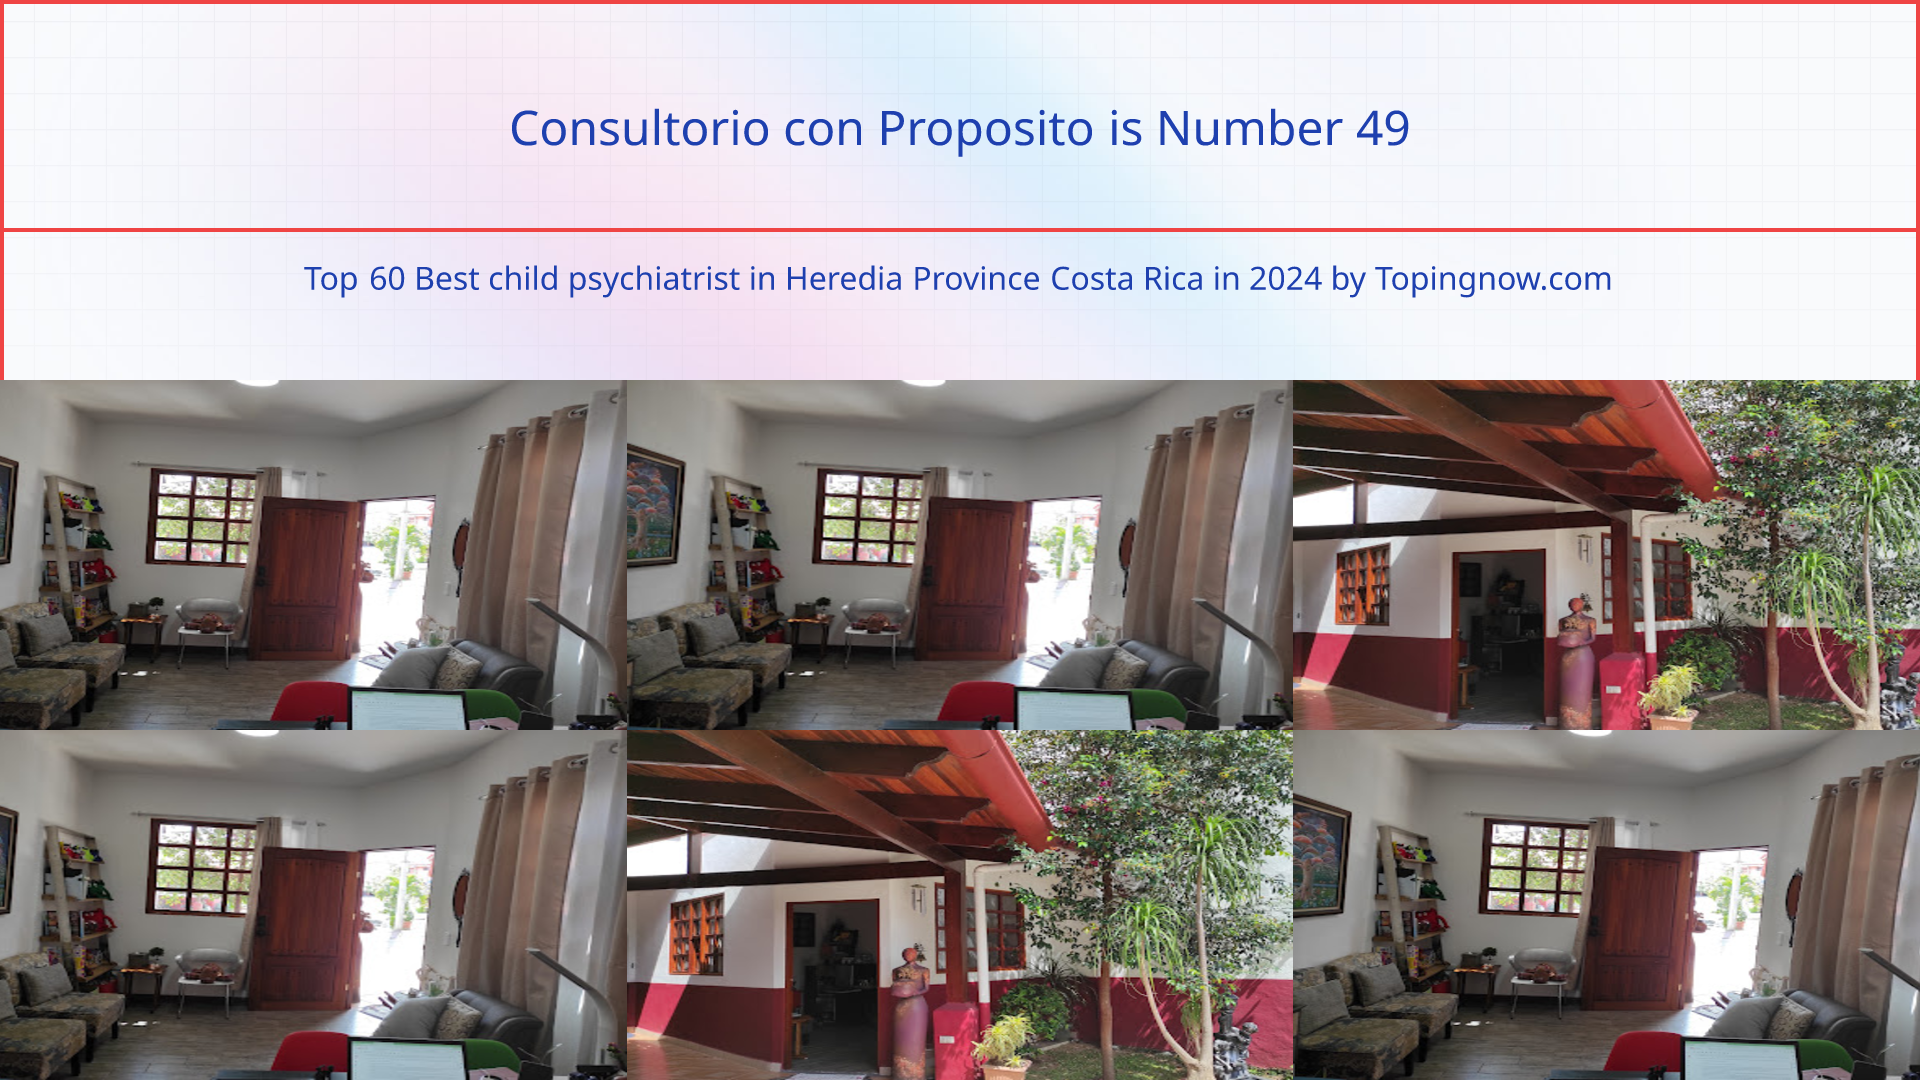 Consultorio con Proposito: Top 60 Best child psychiatrist in Heredia Province Costa Rica in 2024